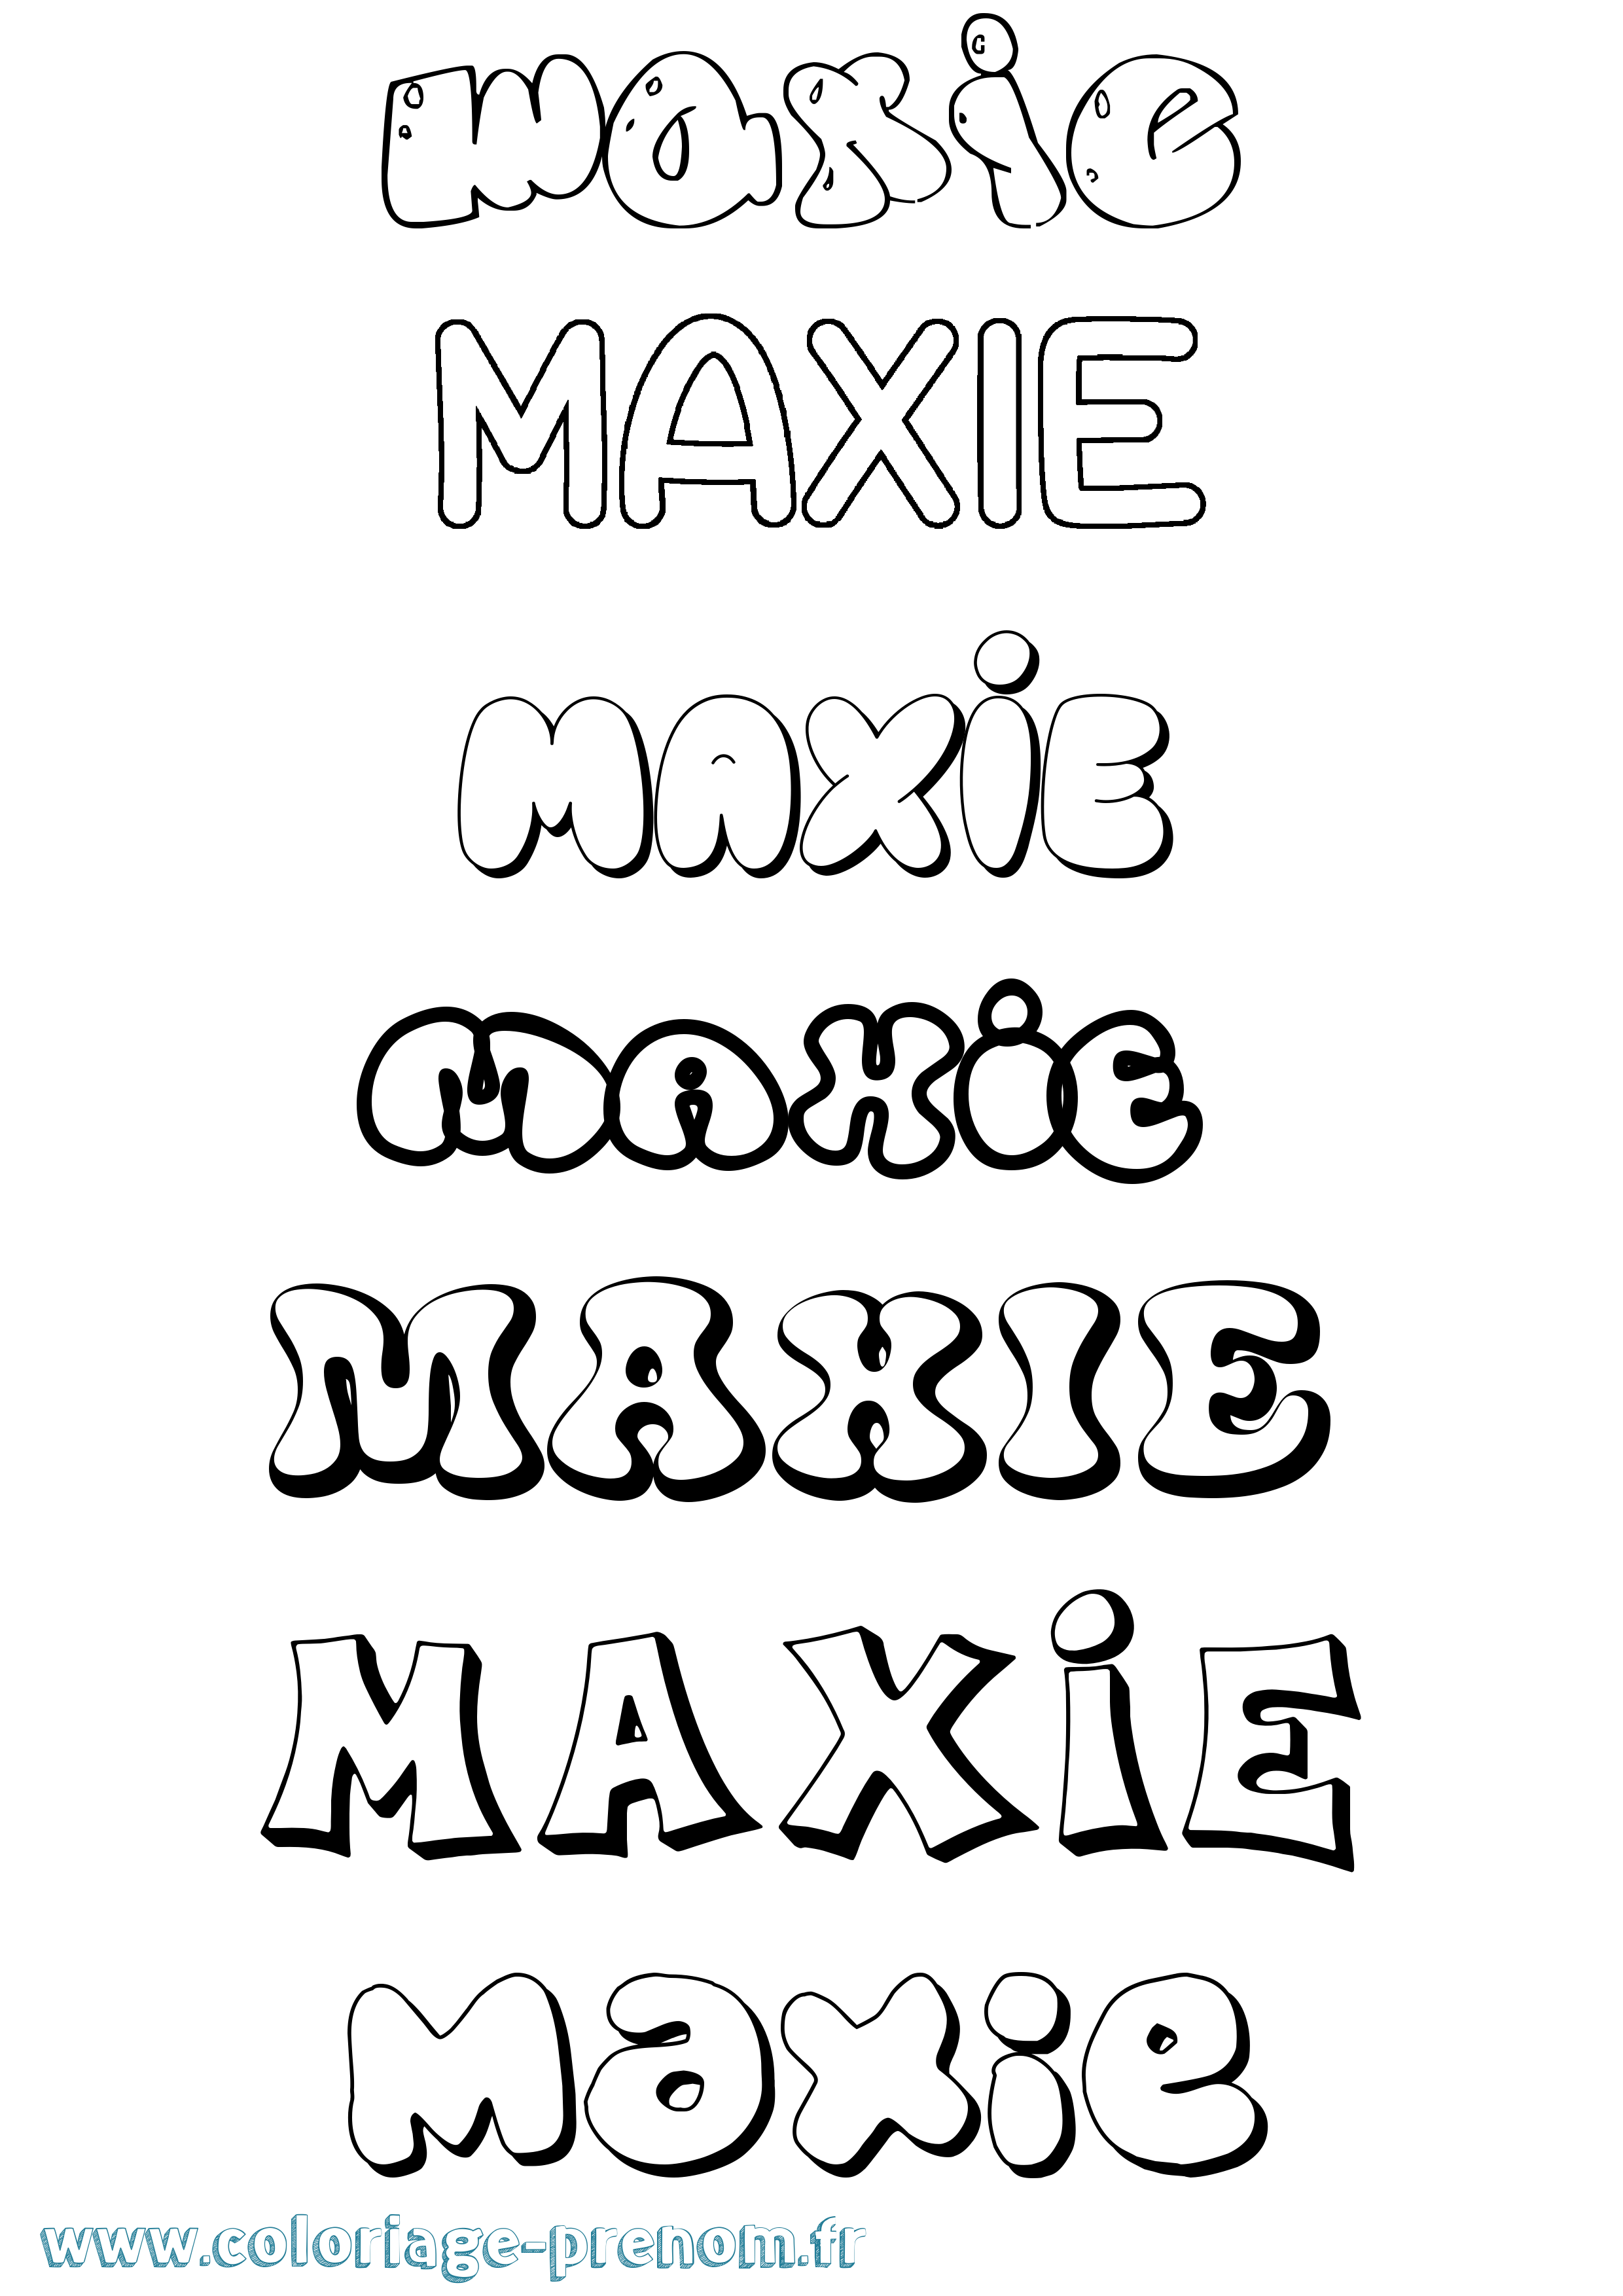 Coloriage prénom Maxie Bubble